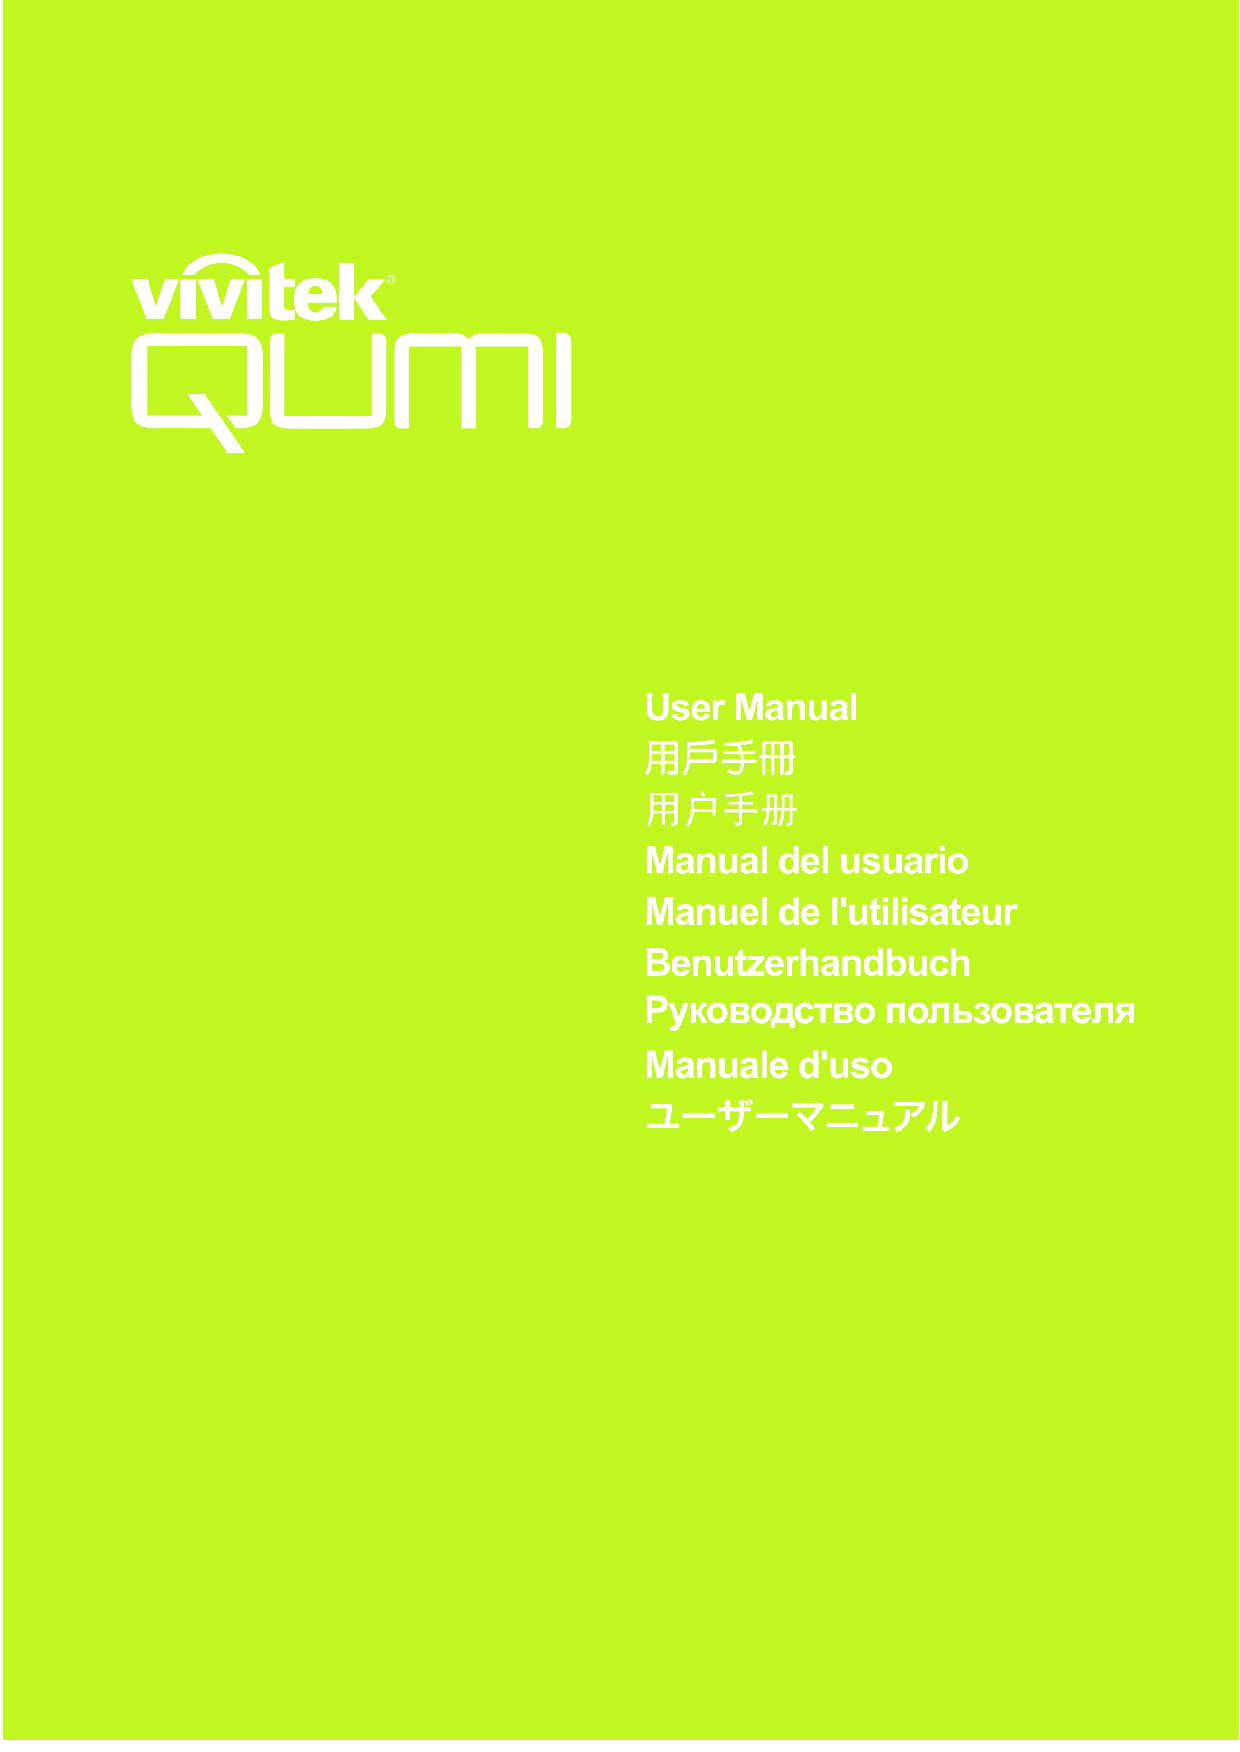 丽讯 Vivitek QUMI Q3 PLUS 用户手册 封面